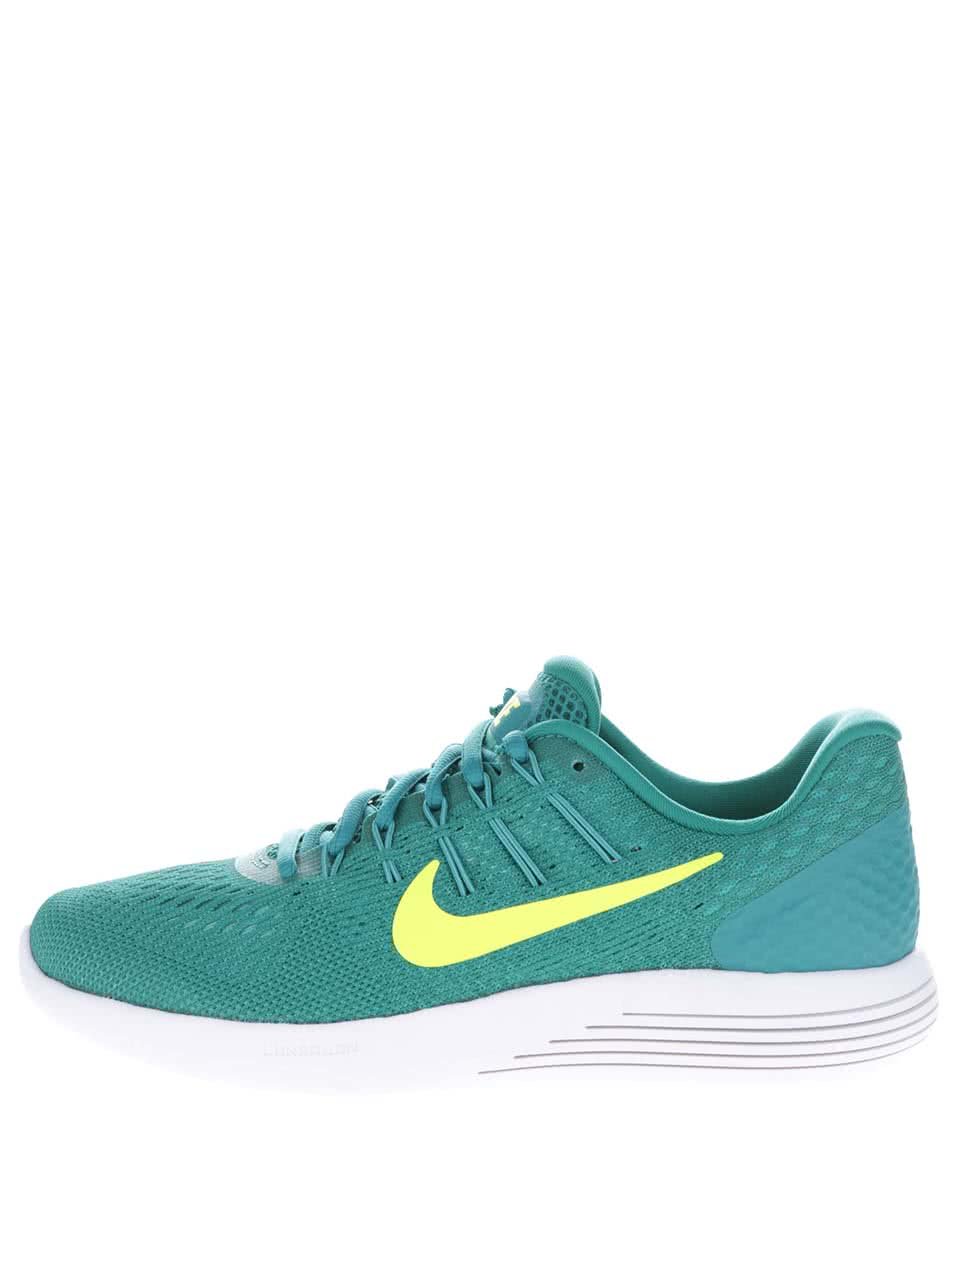 Zelené perforované dámské tenisky Nike Lunarglide 8